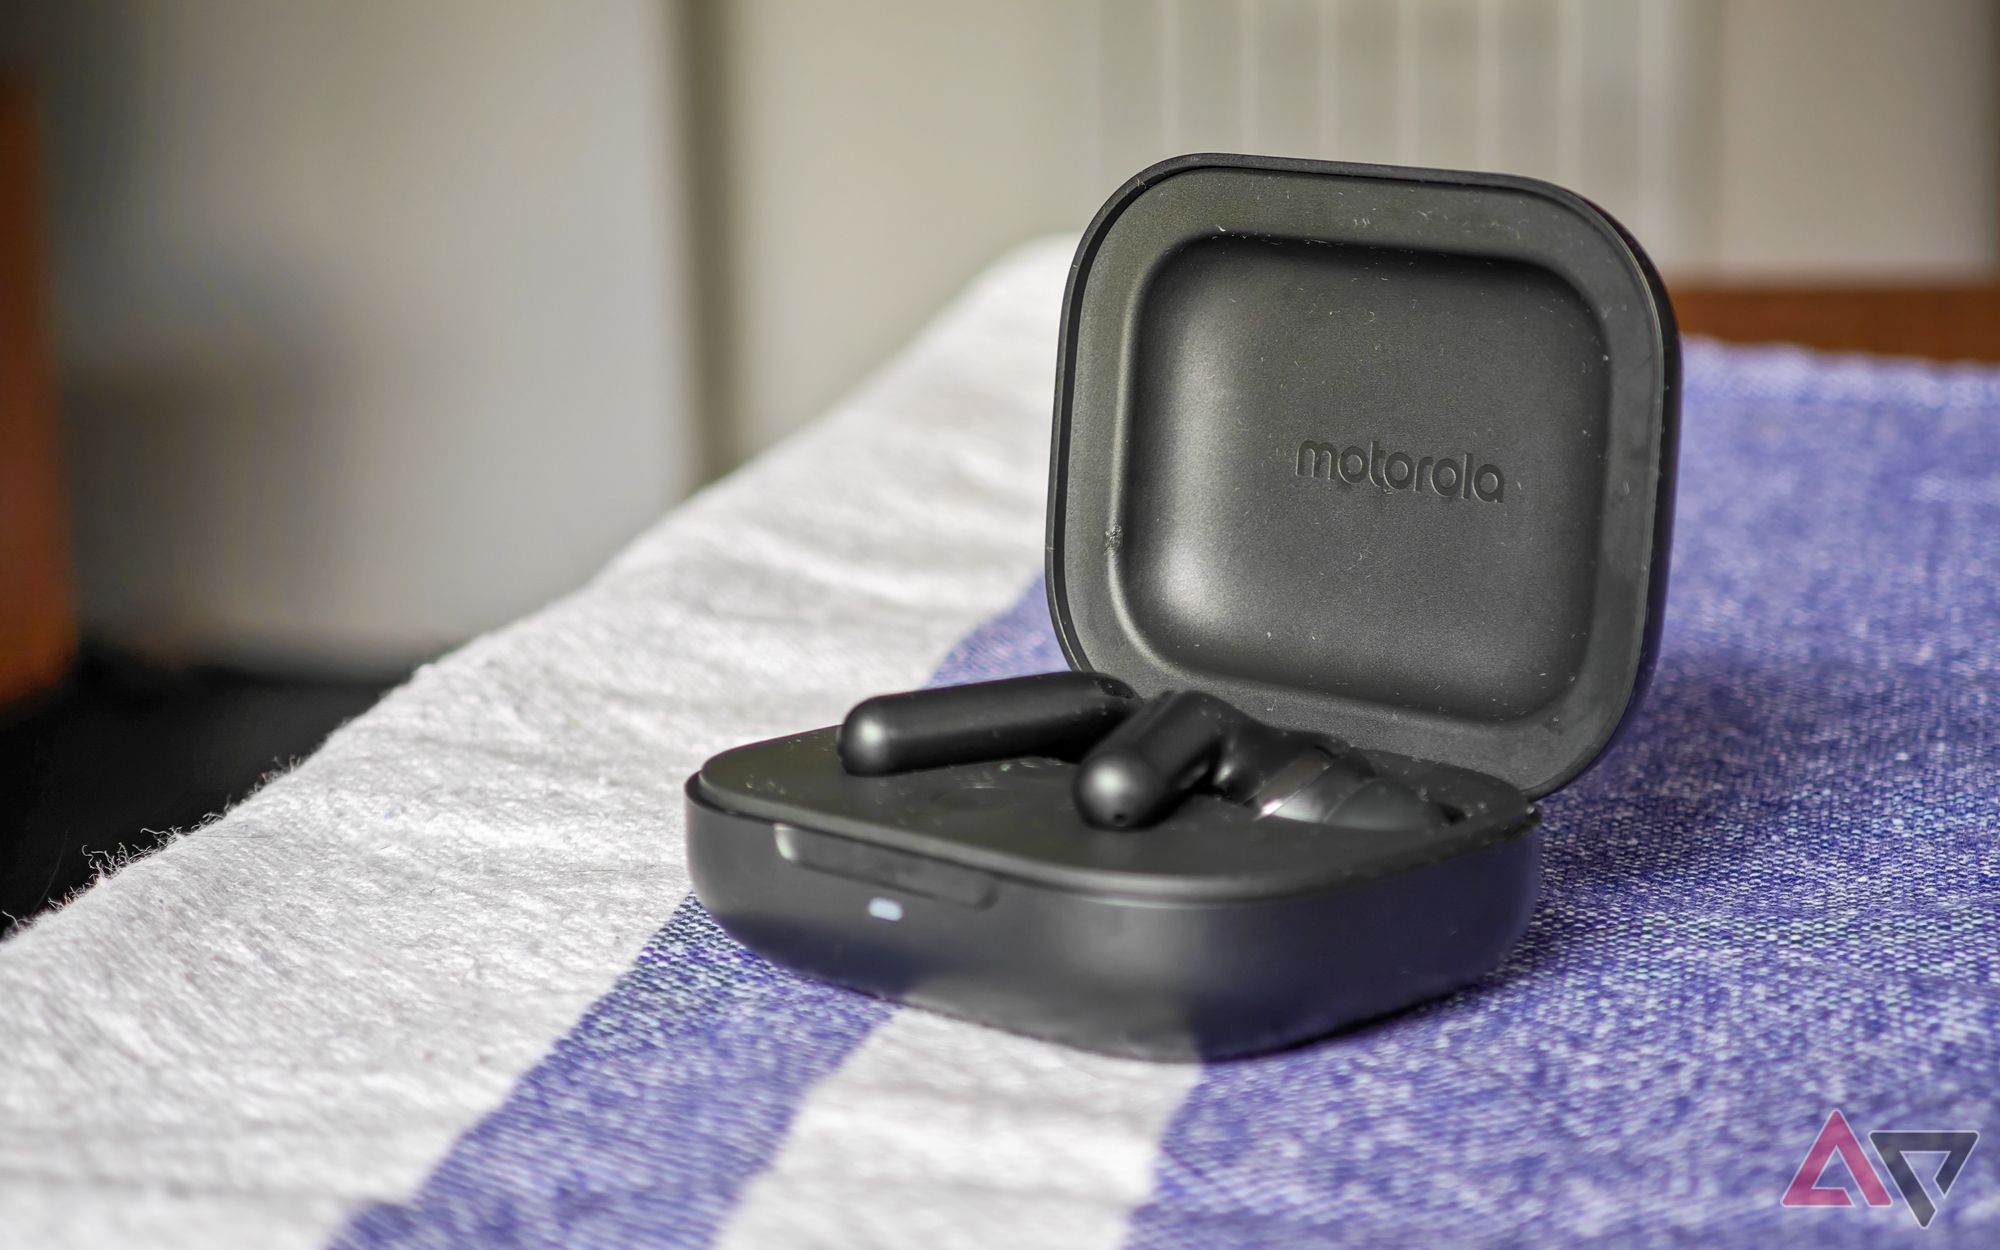 Os Moto Buds+ em preto com os fones de ouvido no estojo de carregamento aberto sobre uma toalha de mesa azul e branca